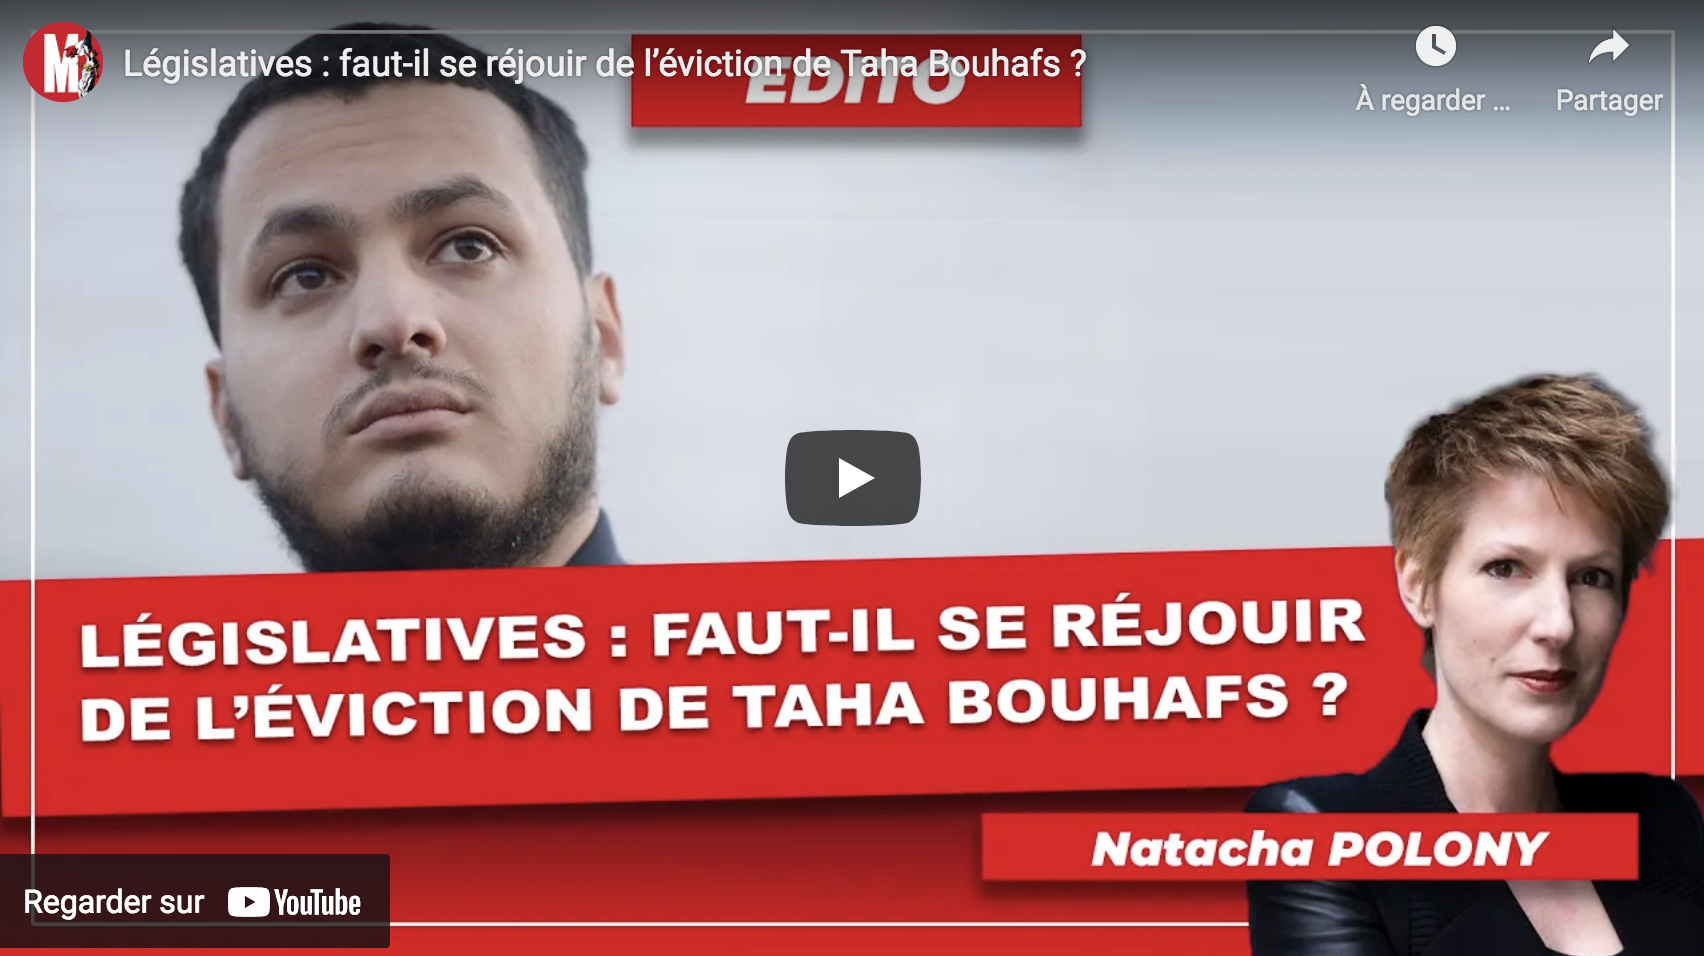 Législatives : faut-il se réjouir de l’éviction de Taha Bouhafs ? (Natacha Polony)